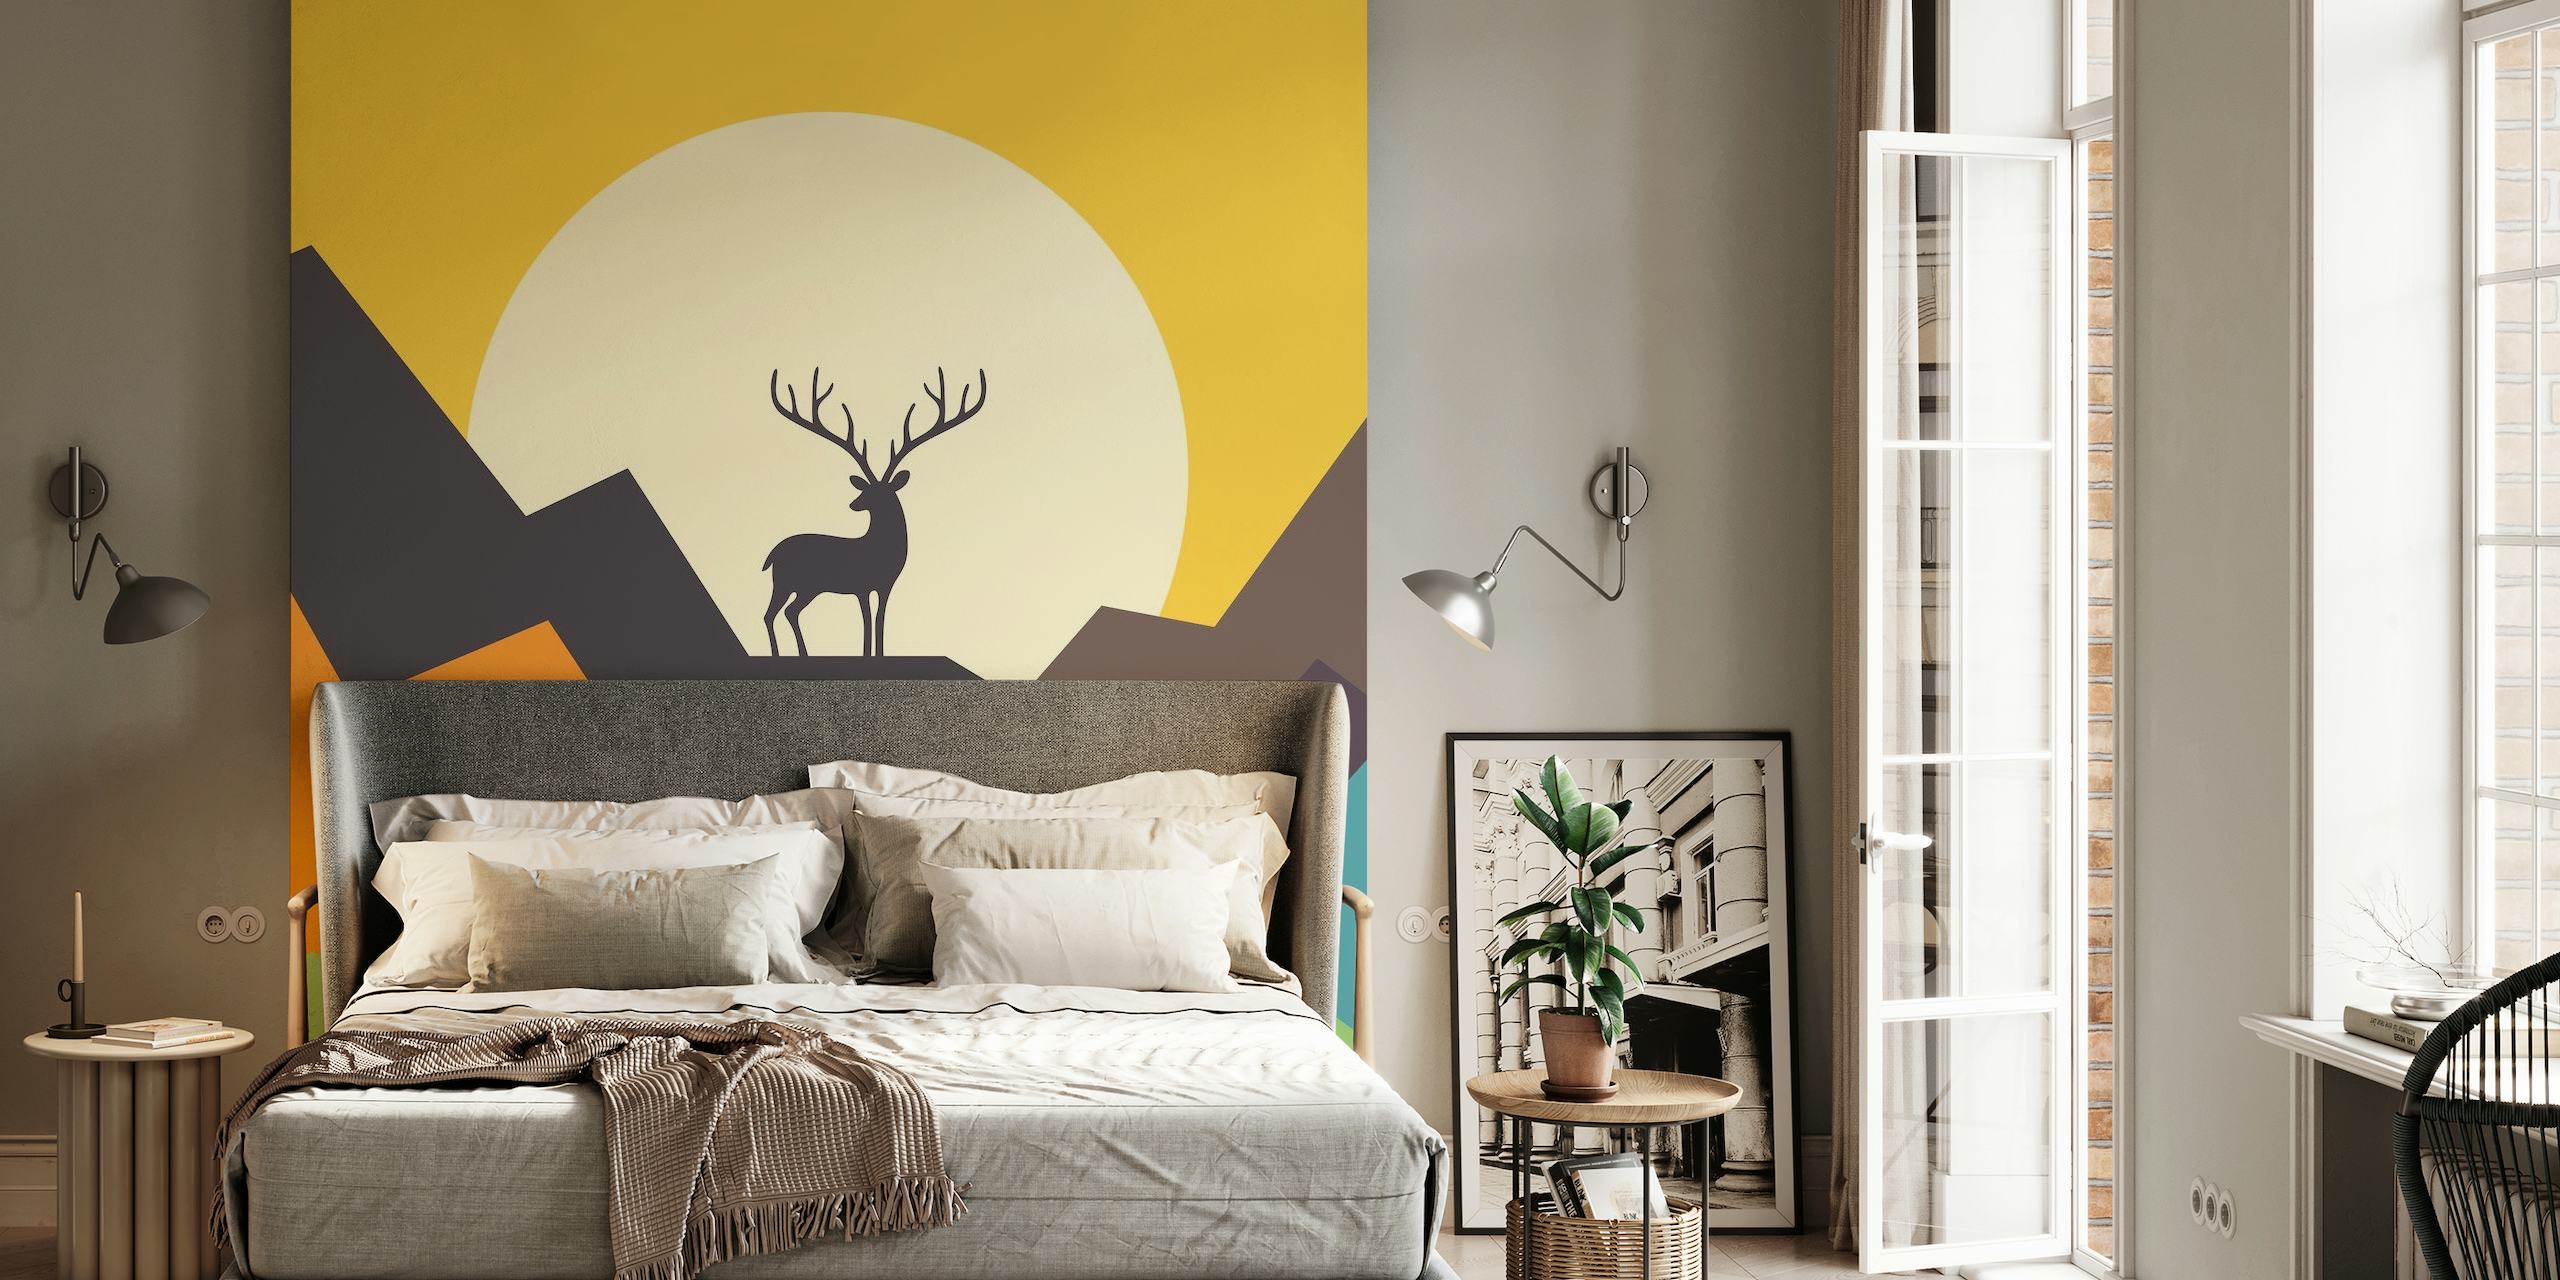 My Deer wallpaper